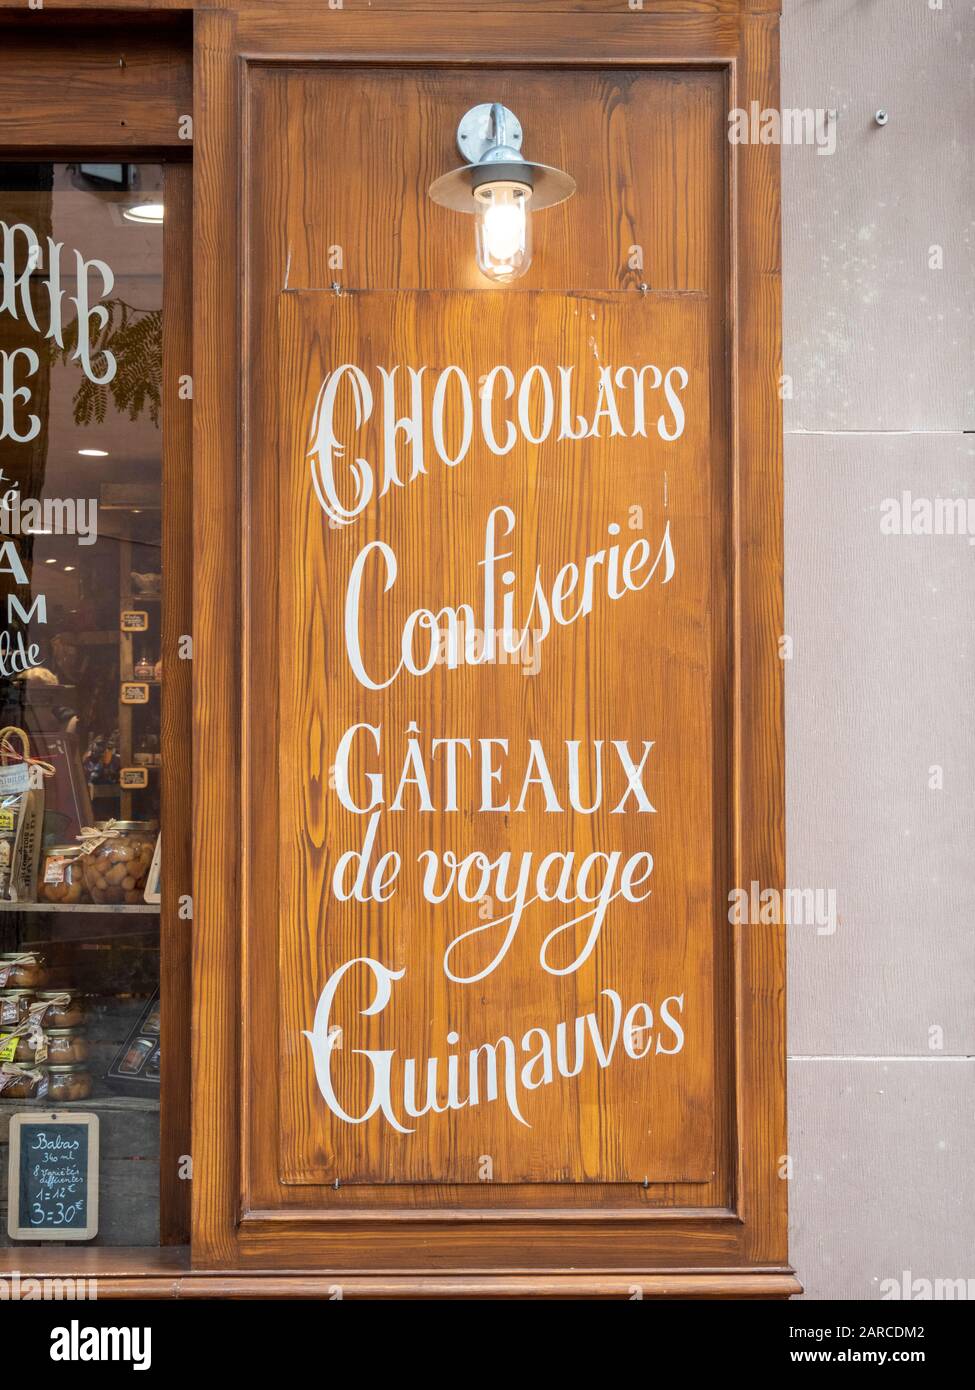 Una tavola di legno o una finestra di serranda fuori di un negozio di cioccolato francese con scrittura di cioccolatini pubblicitari, confiseries, gateaux de voyage e altri dolci Foto Stock